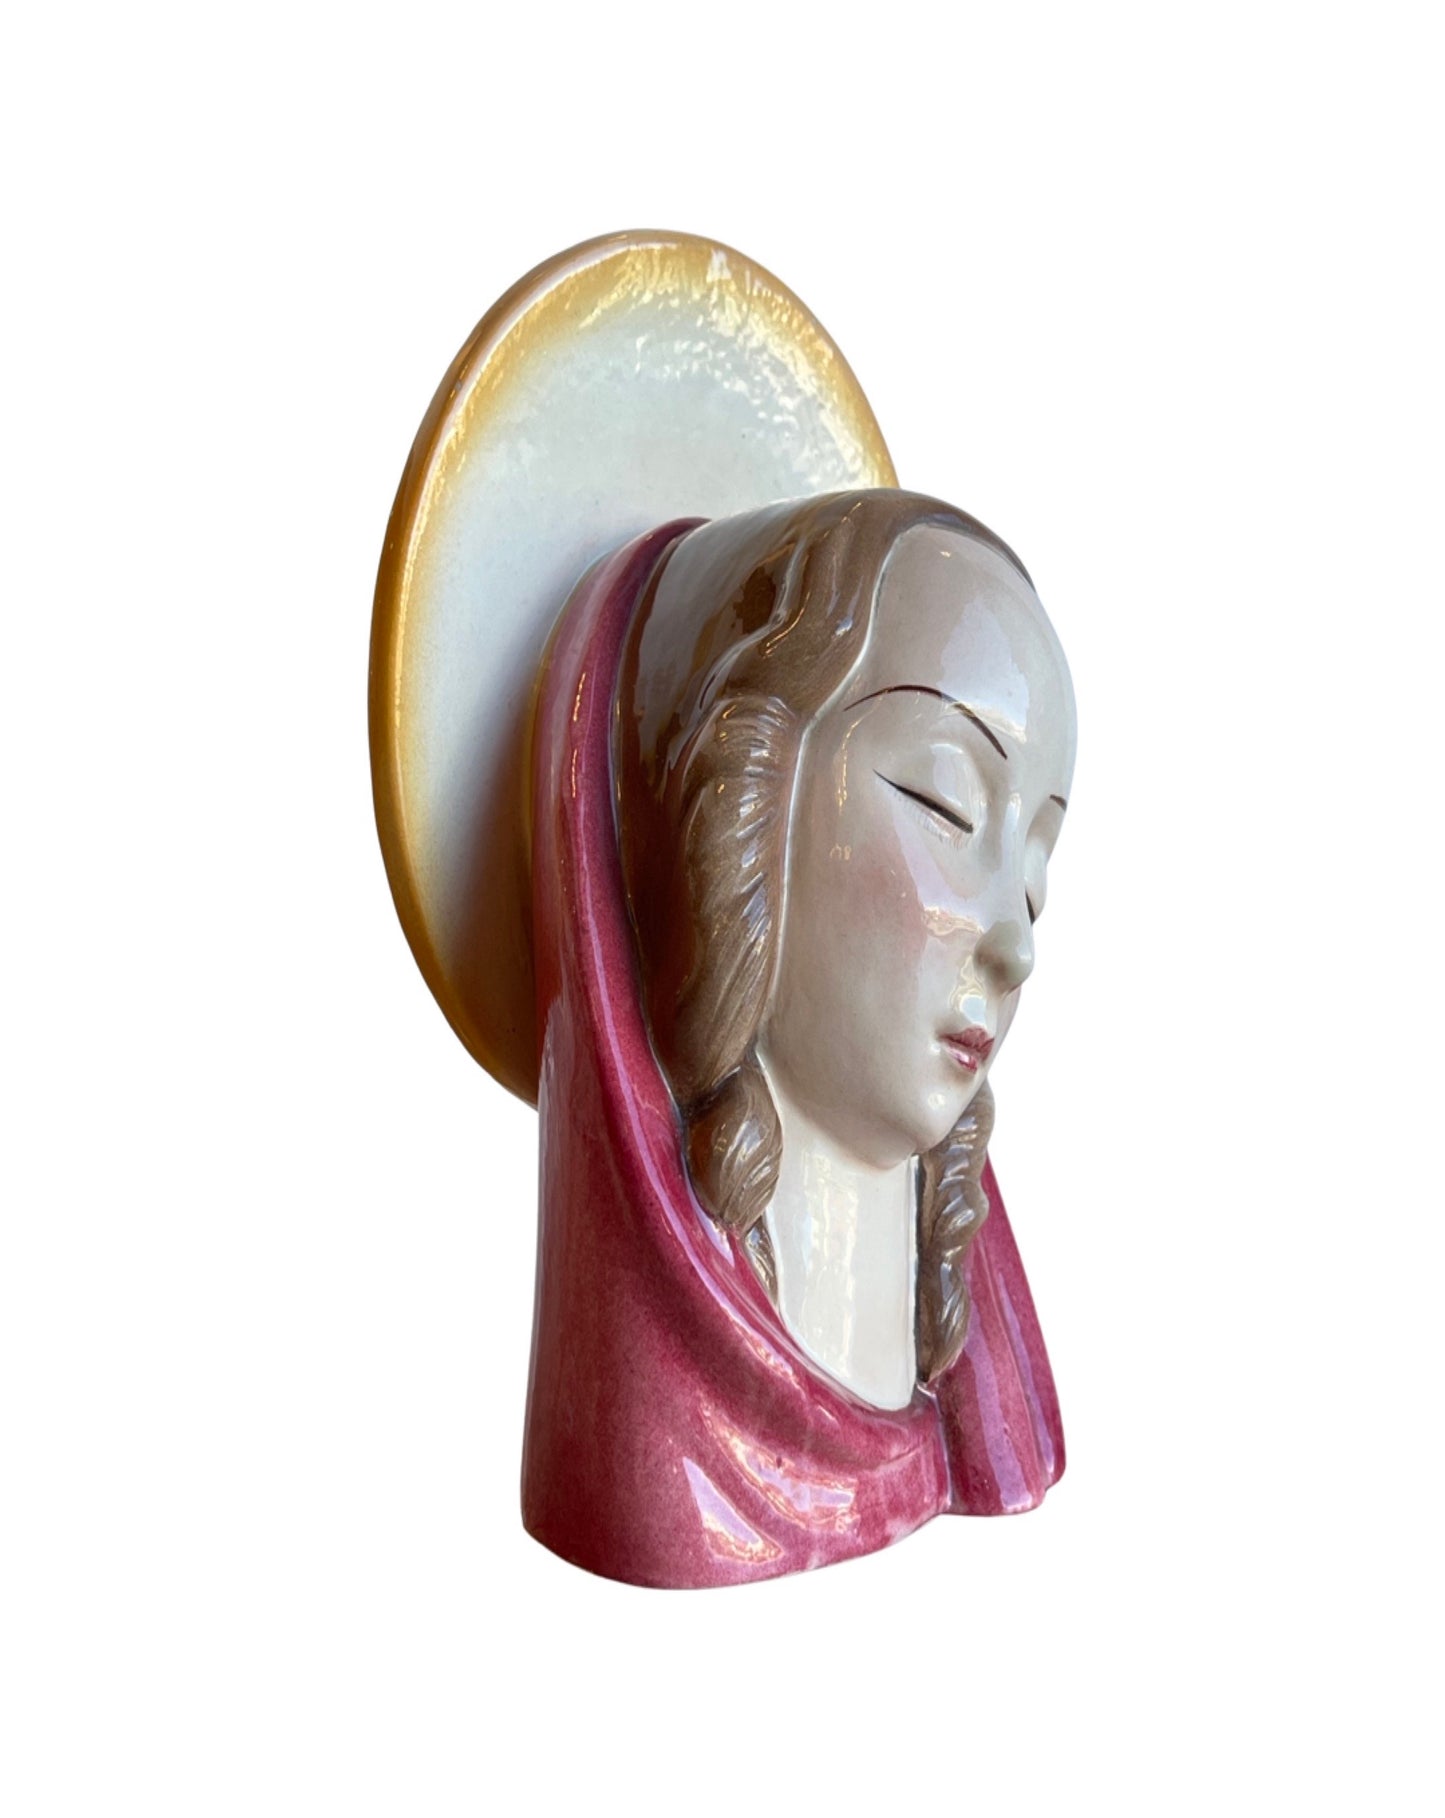 Etruria Colle Val d'Elsa Italian Virgin Mary Ceramic, 1950s